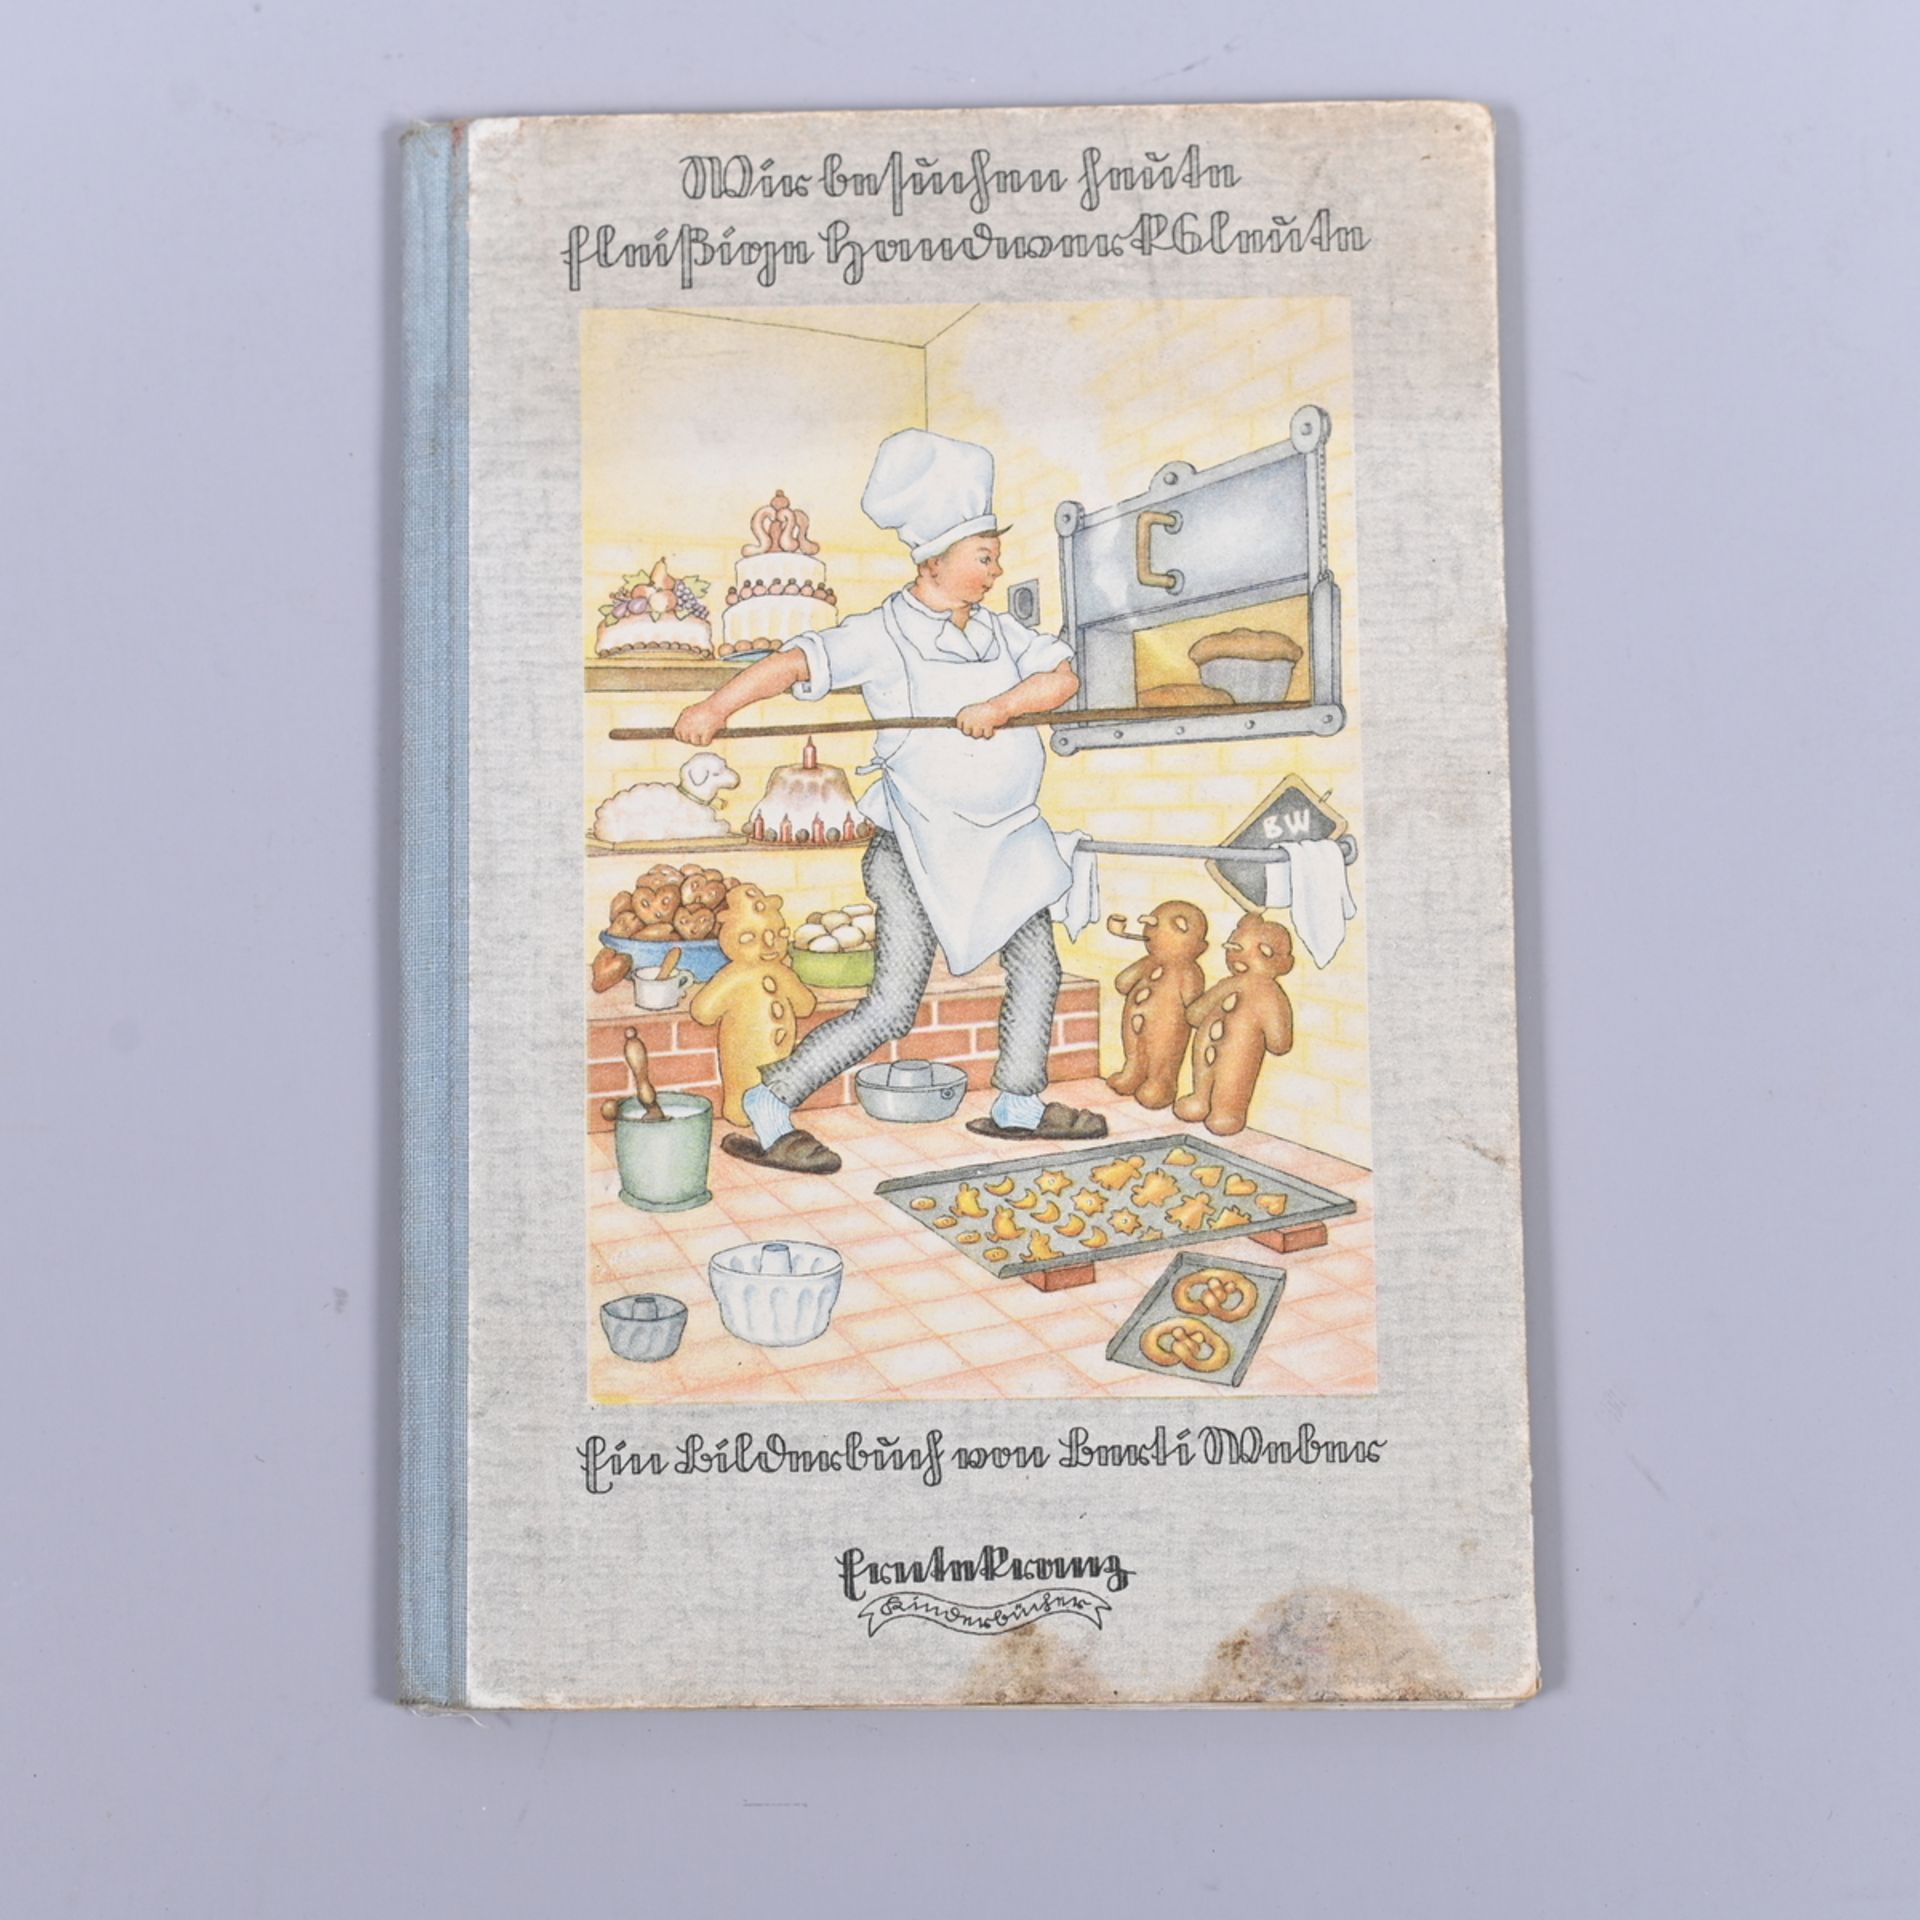 "Ernte-Kranz" - Kinderbücher, "Wir besuchen heute fleißige Handwerksleute" Bilderbuch v. Berti